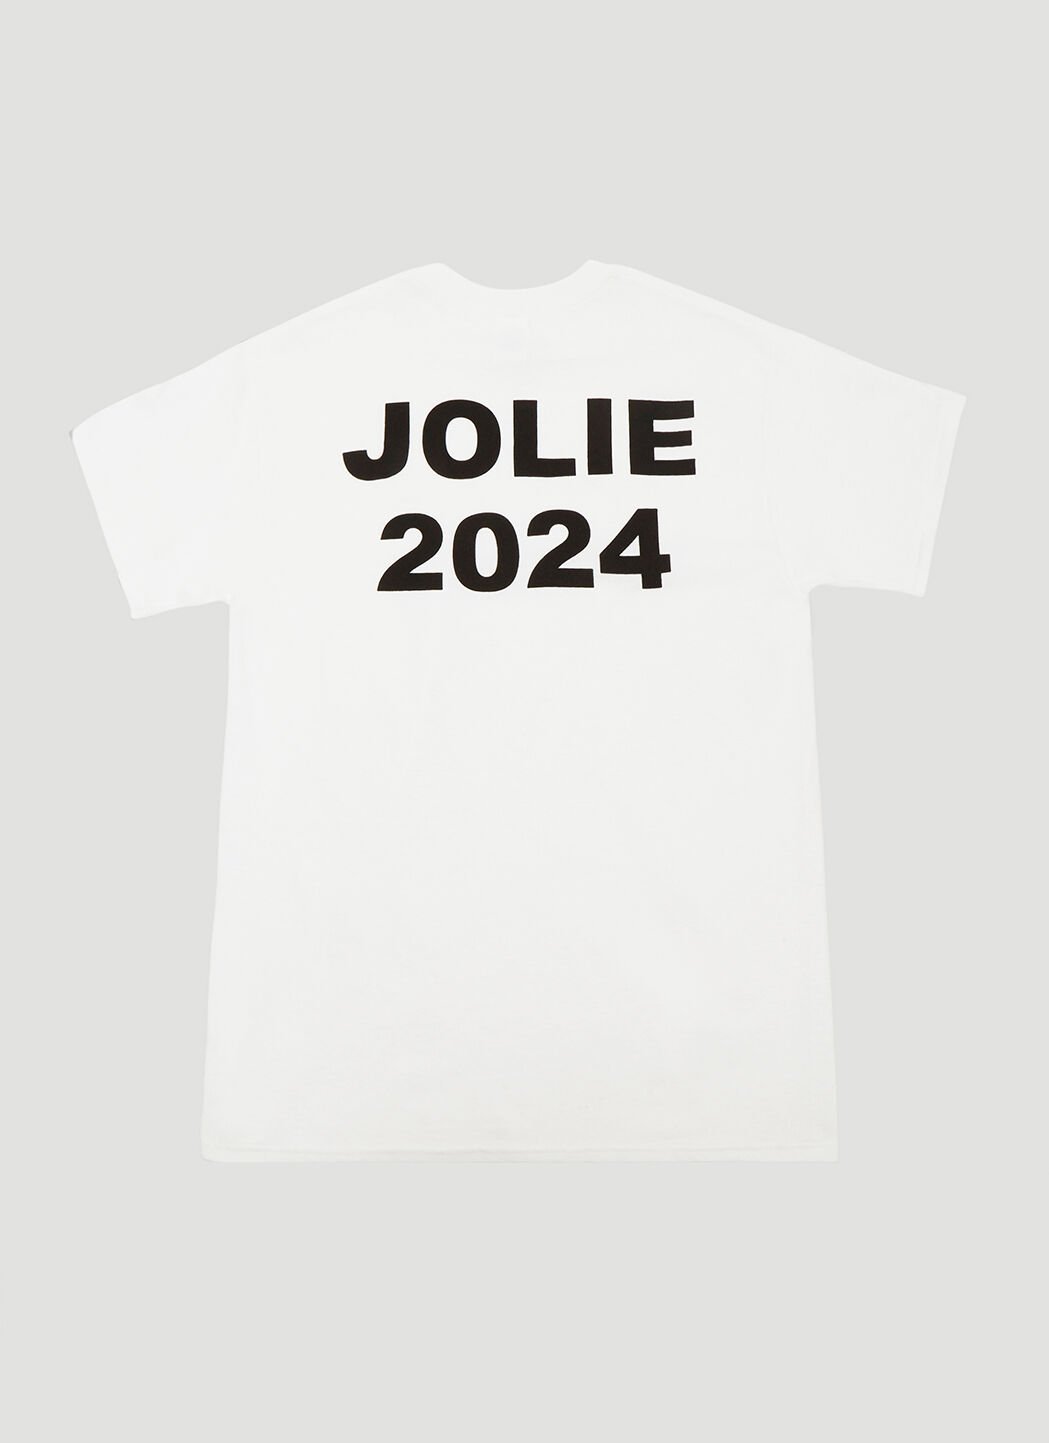 Saint Laurent Article 1 Jolie 2024 T-Shirt Black sla0134043